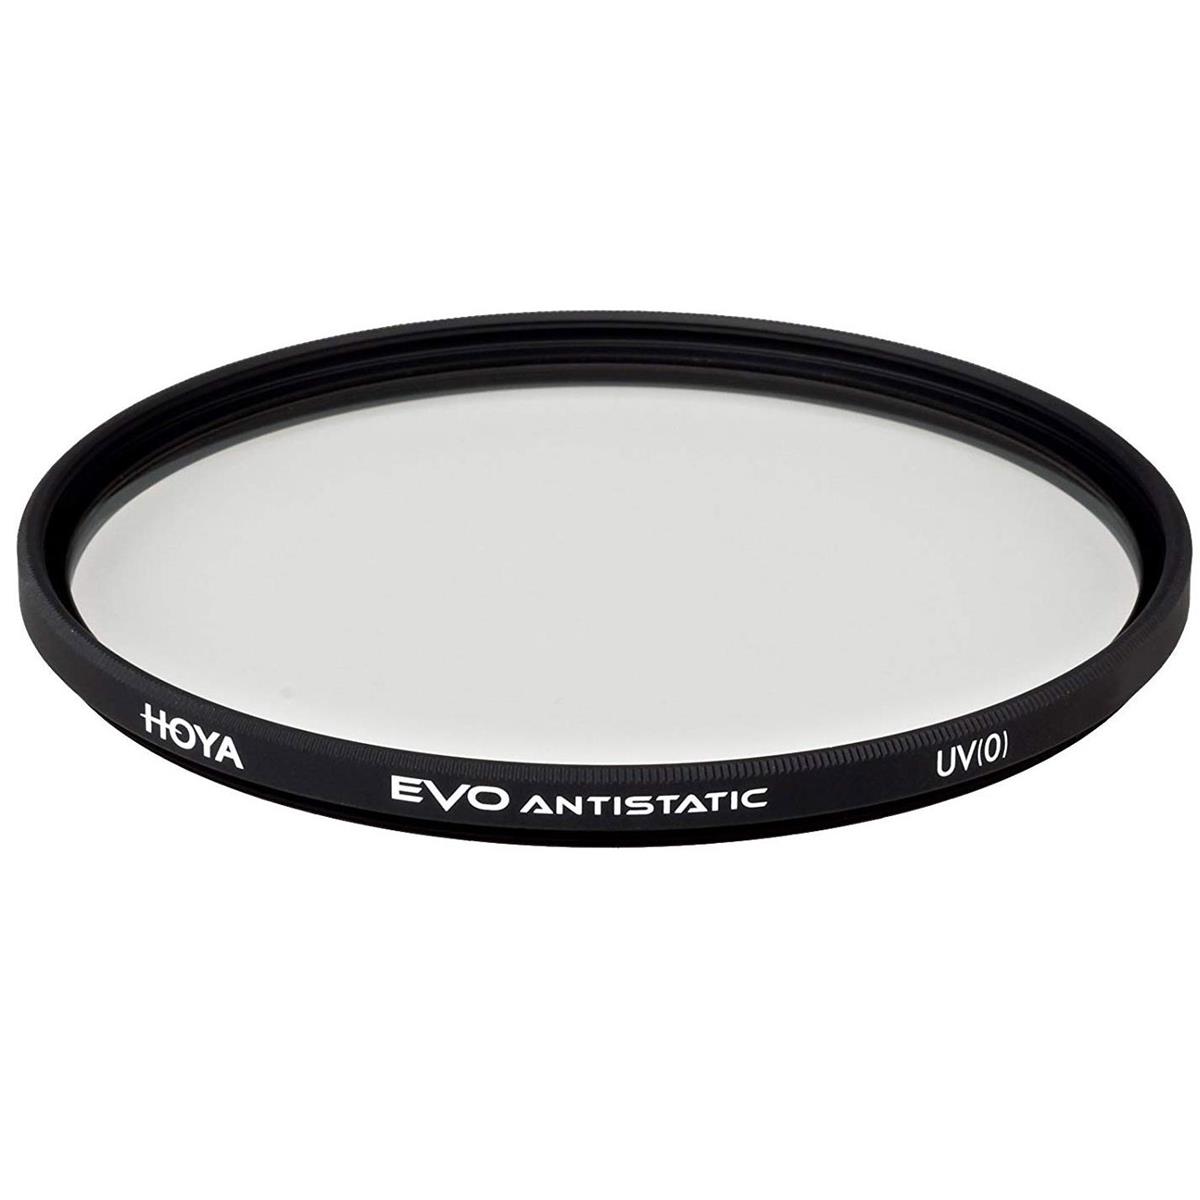 Hoya Evo Antistatic UV Filter - 67mm hasselblad 67mm uv sky filter